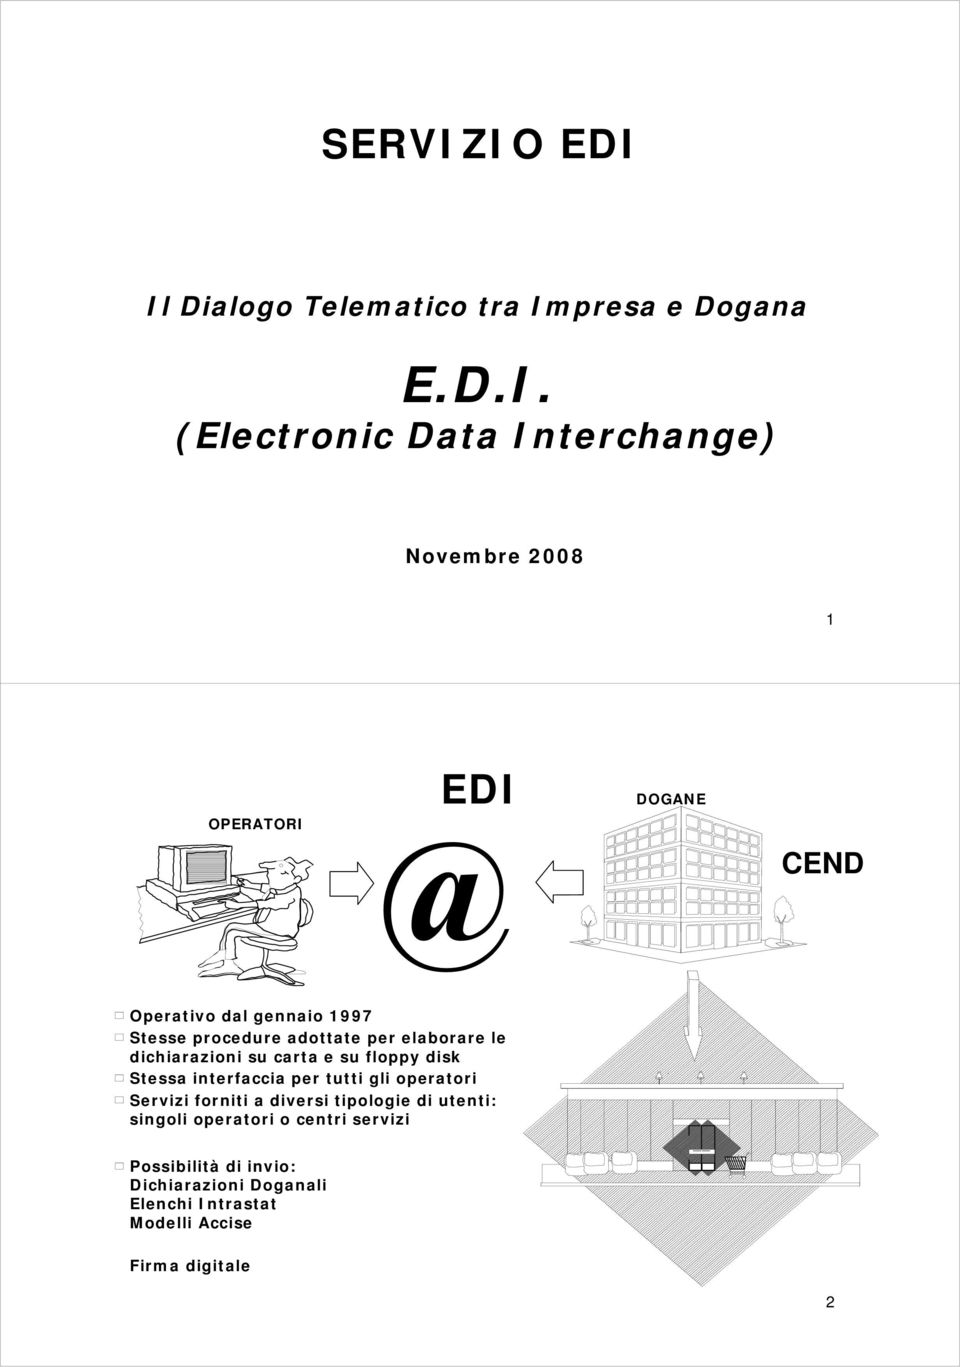 EDI DOGANE CEND Operativo dal gennaio 1997 Stesse procedure adottate per elaborare le dichiarazioni su carta e su